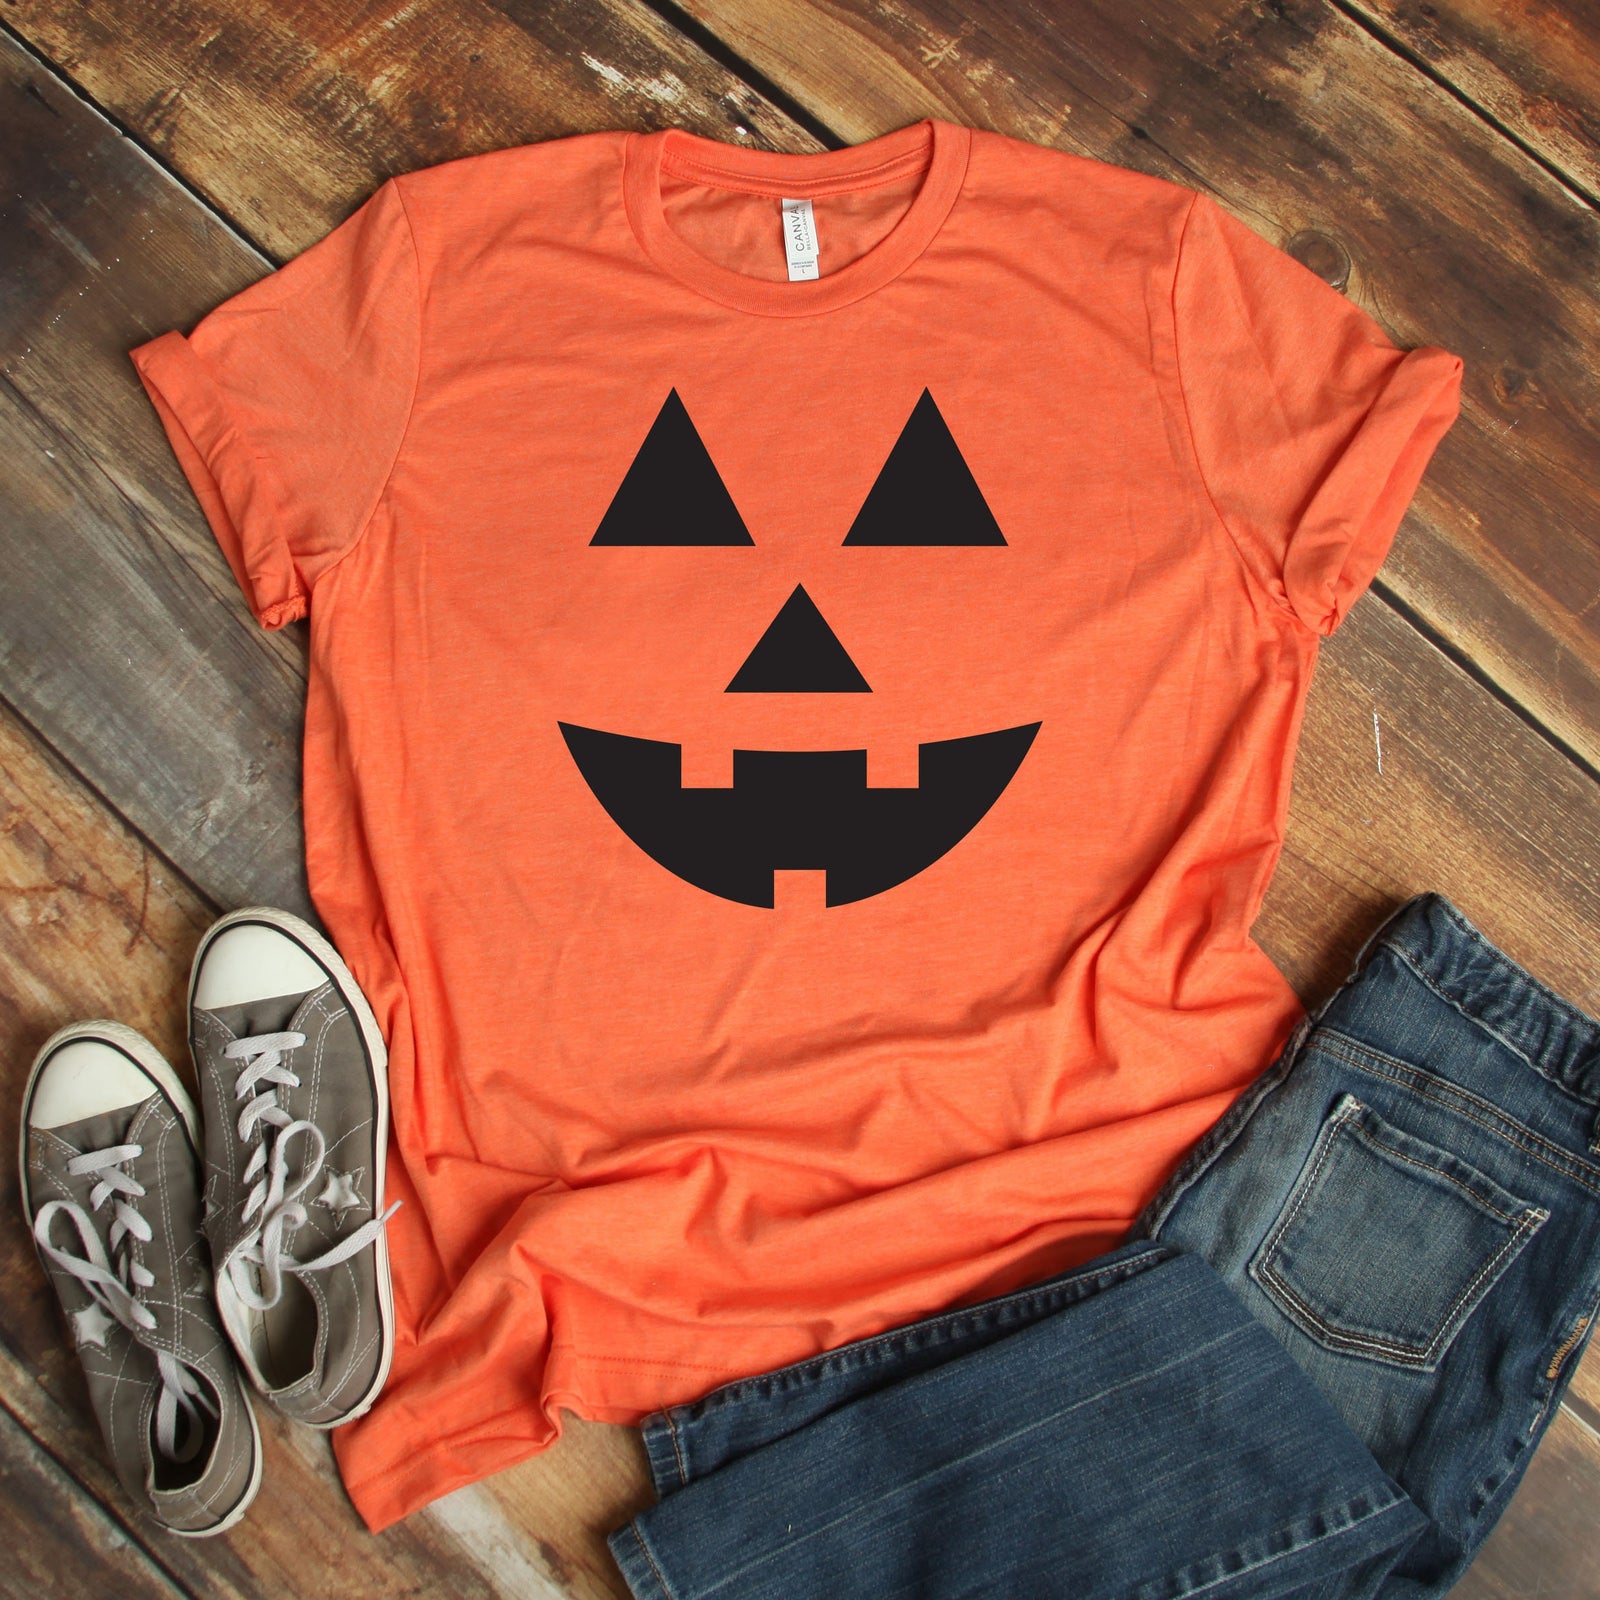 Smiling Pumpkin - Happy Halloween Adult T Shirt - Halloween -Classic Pumpkin Cut Out Face